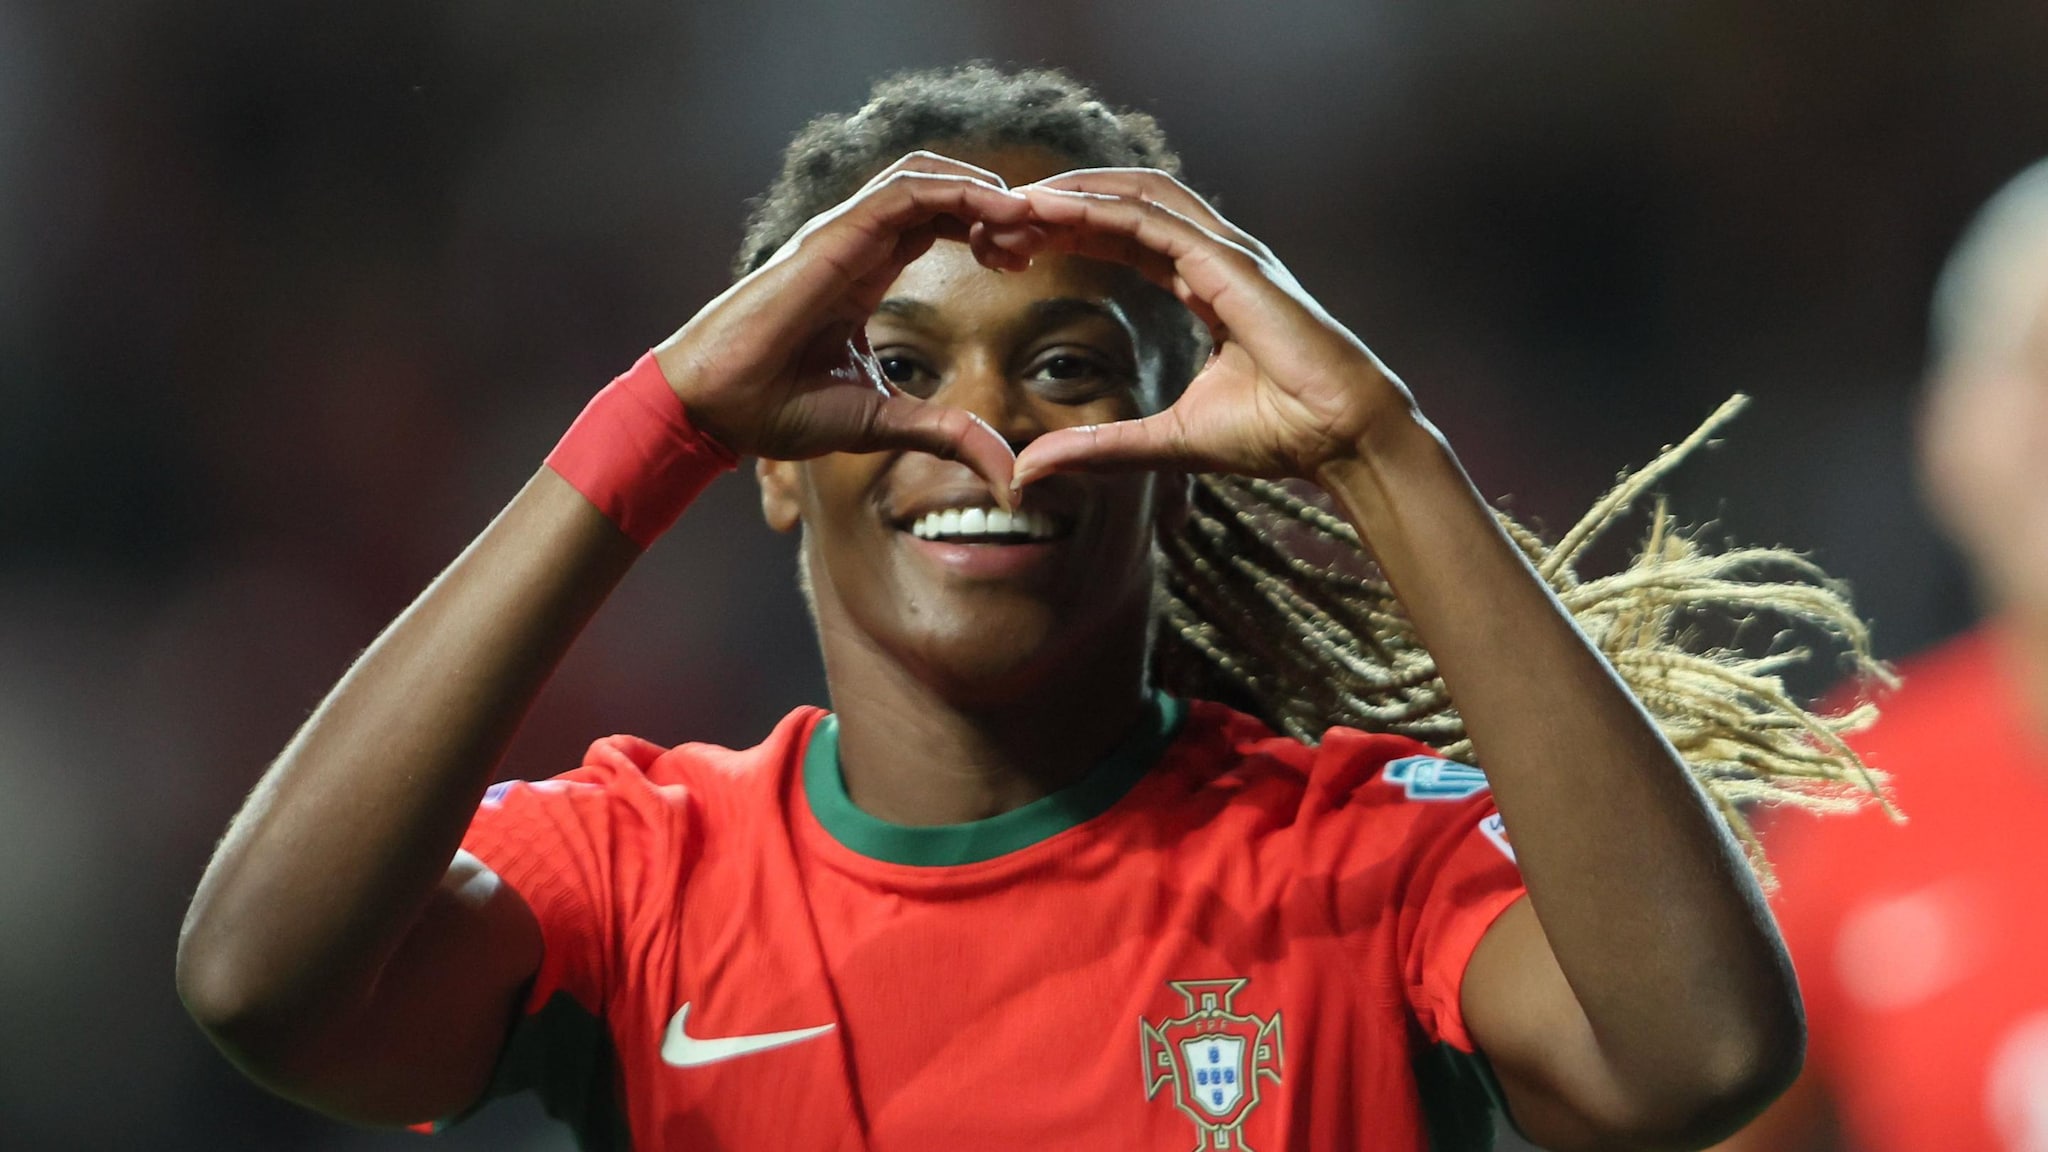 Clasificatorios Europeos femeninos 1: Portugal venció a España, Inglaterra sorprende |  Clasificación europea para mujeres